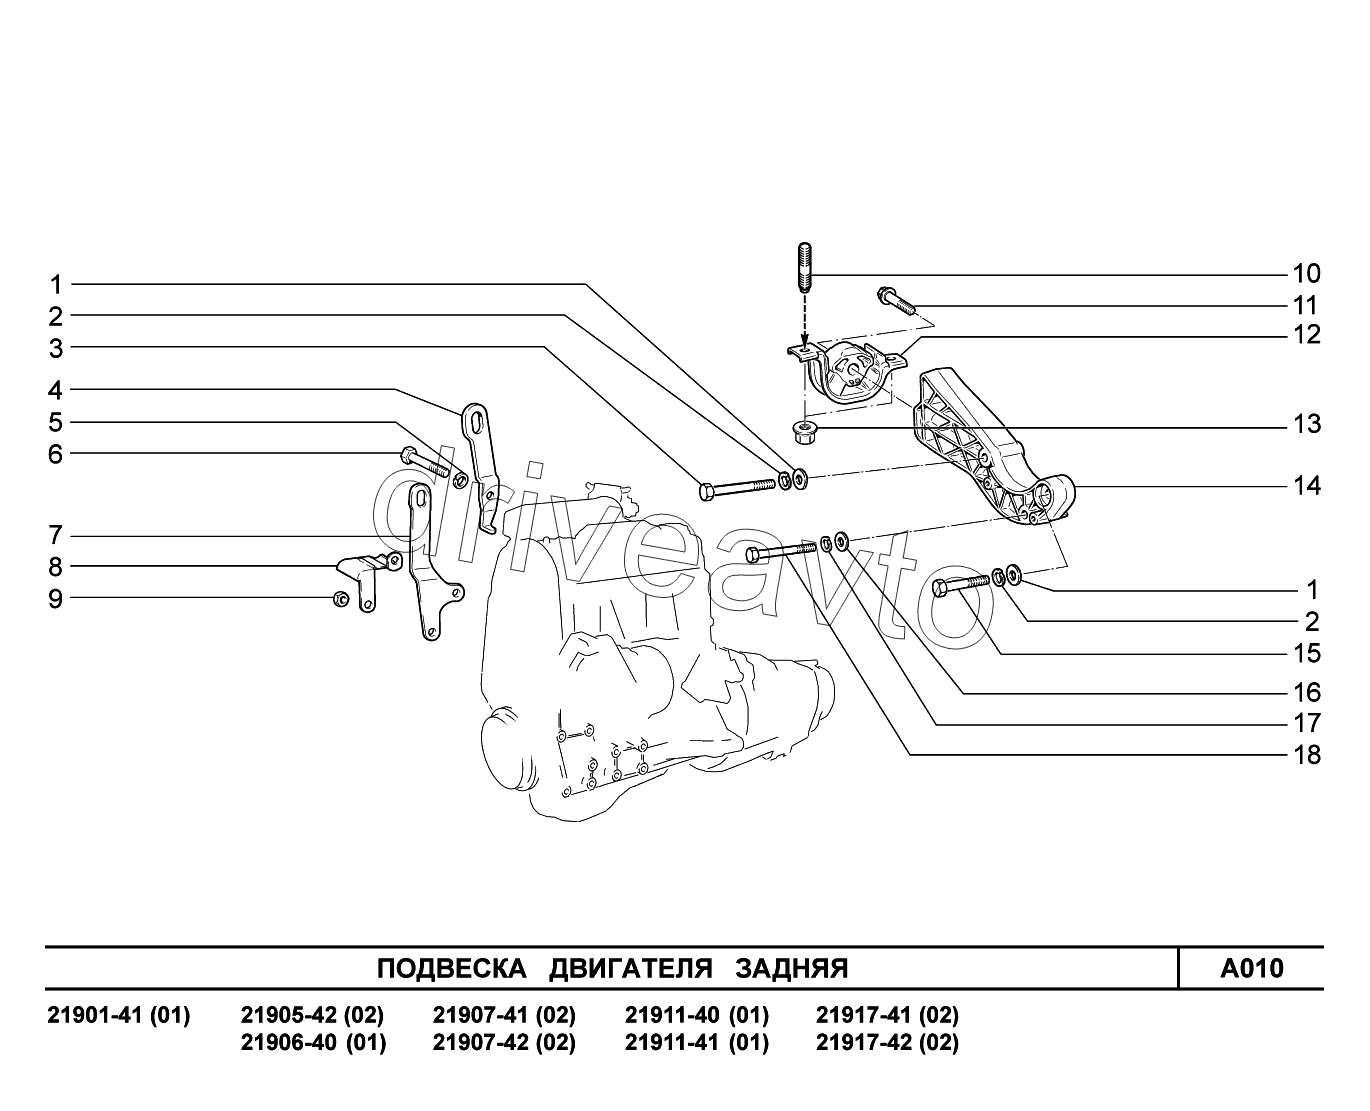 A010. Подвеска двигателя задняя